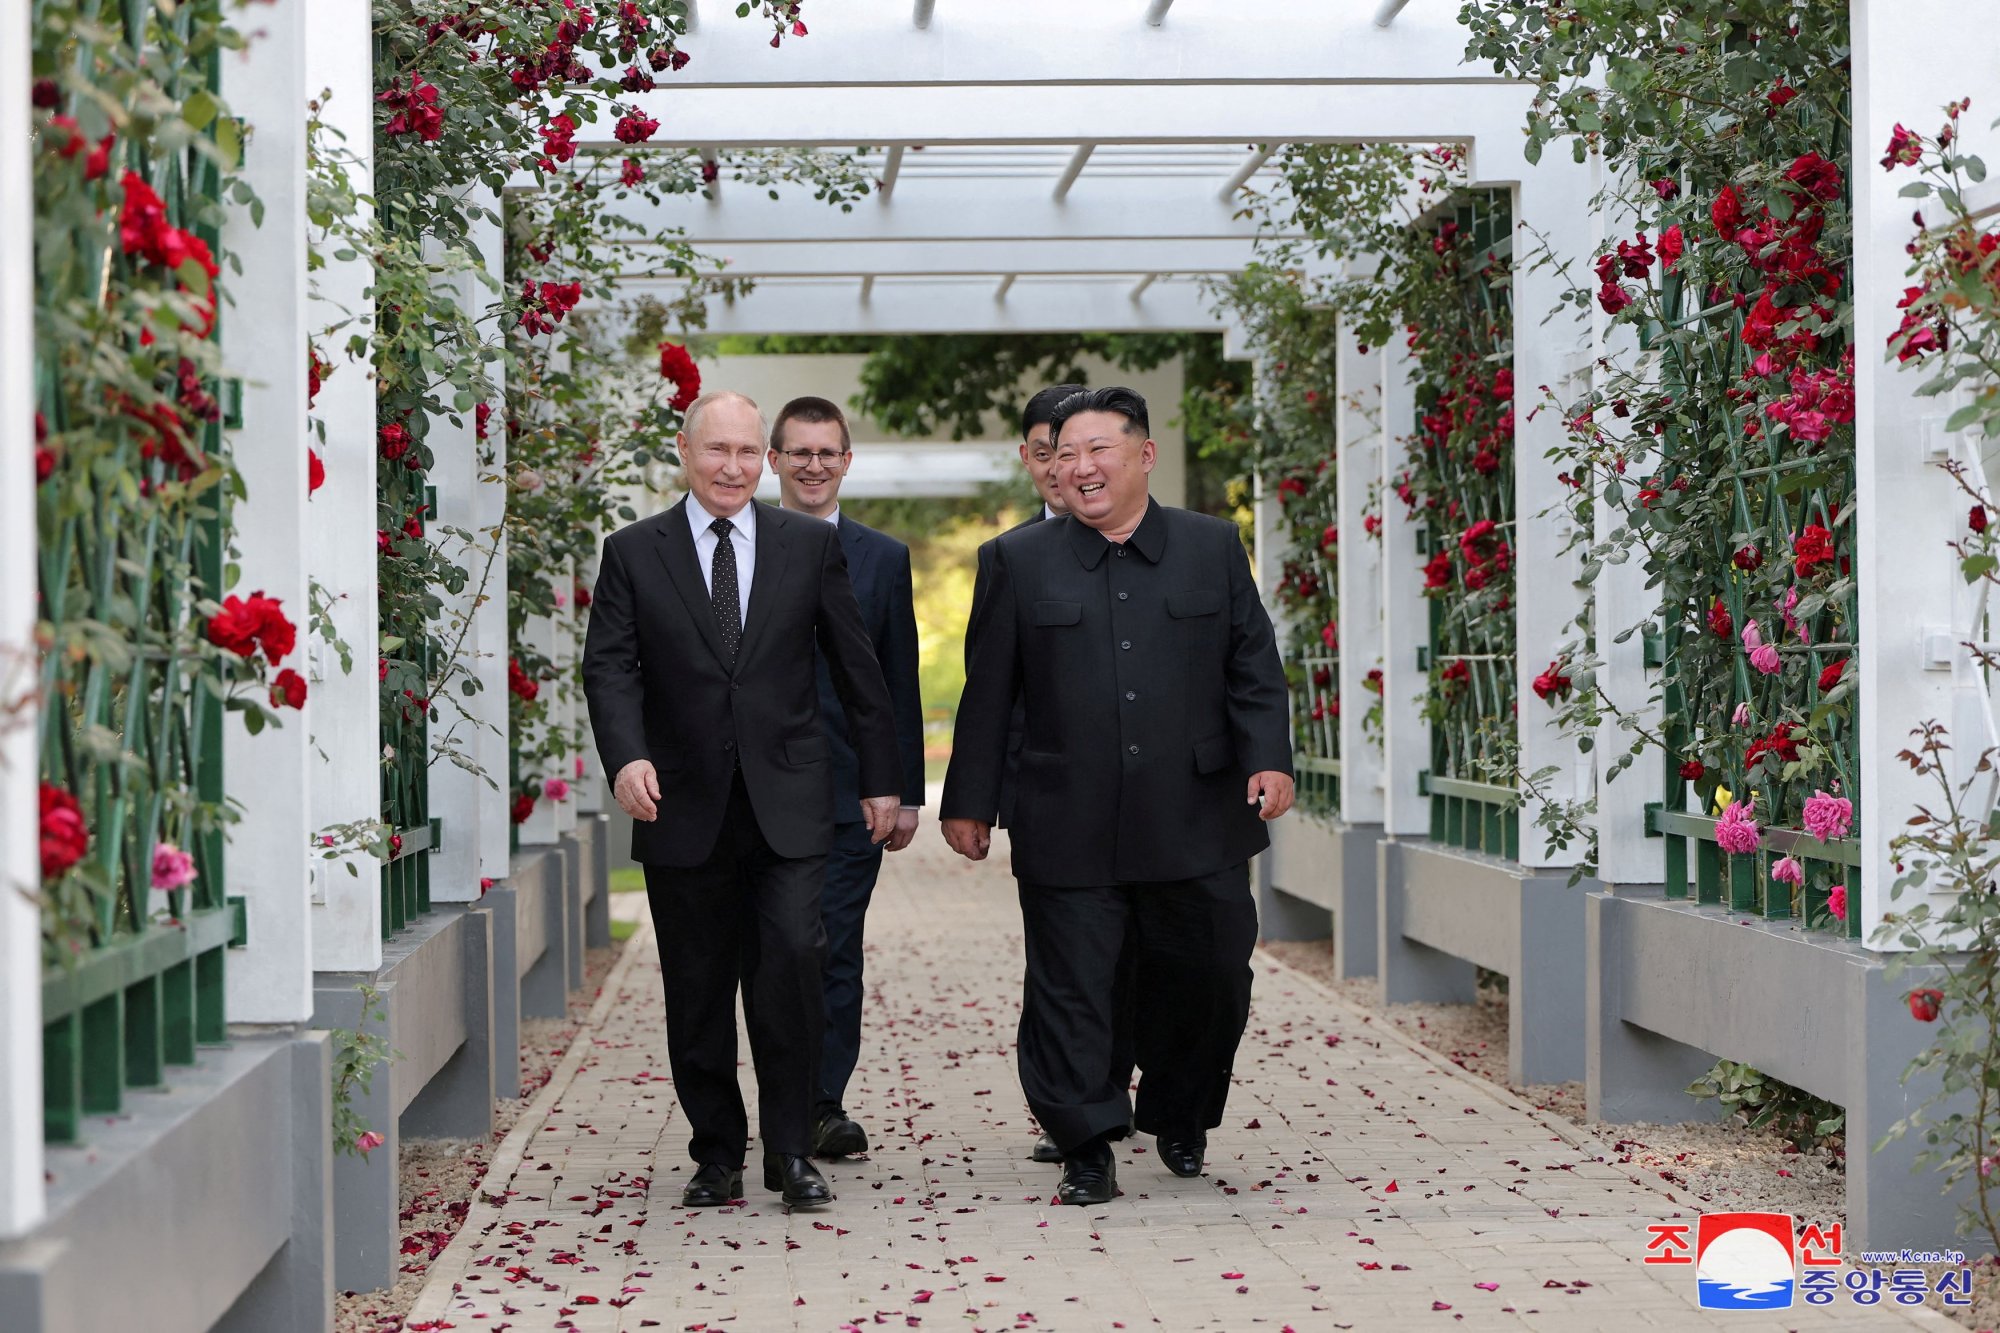 Βόρεια Κορέα: Τα δώρα που αντάλλαξαν Κιμ Γιονγκ Ουν και Βλαντιμίρ Πούτιν (εικόνες)